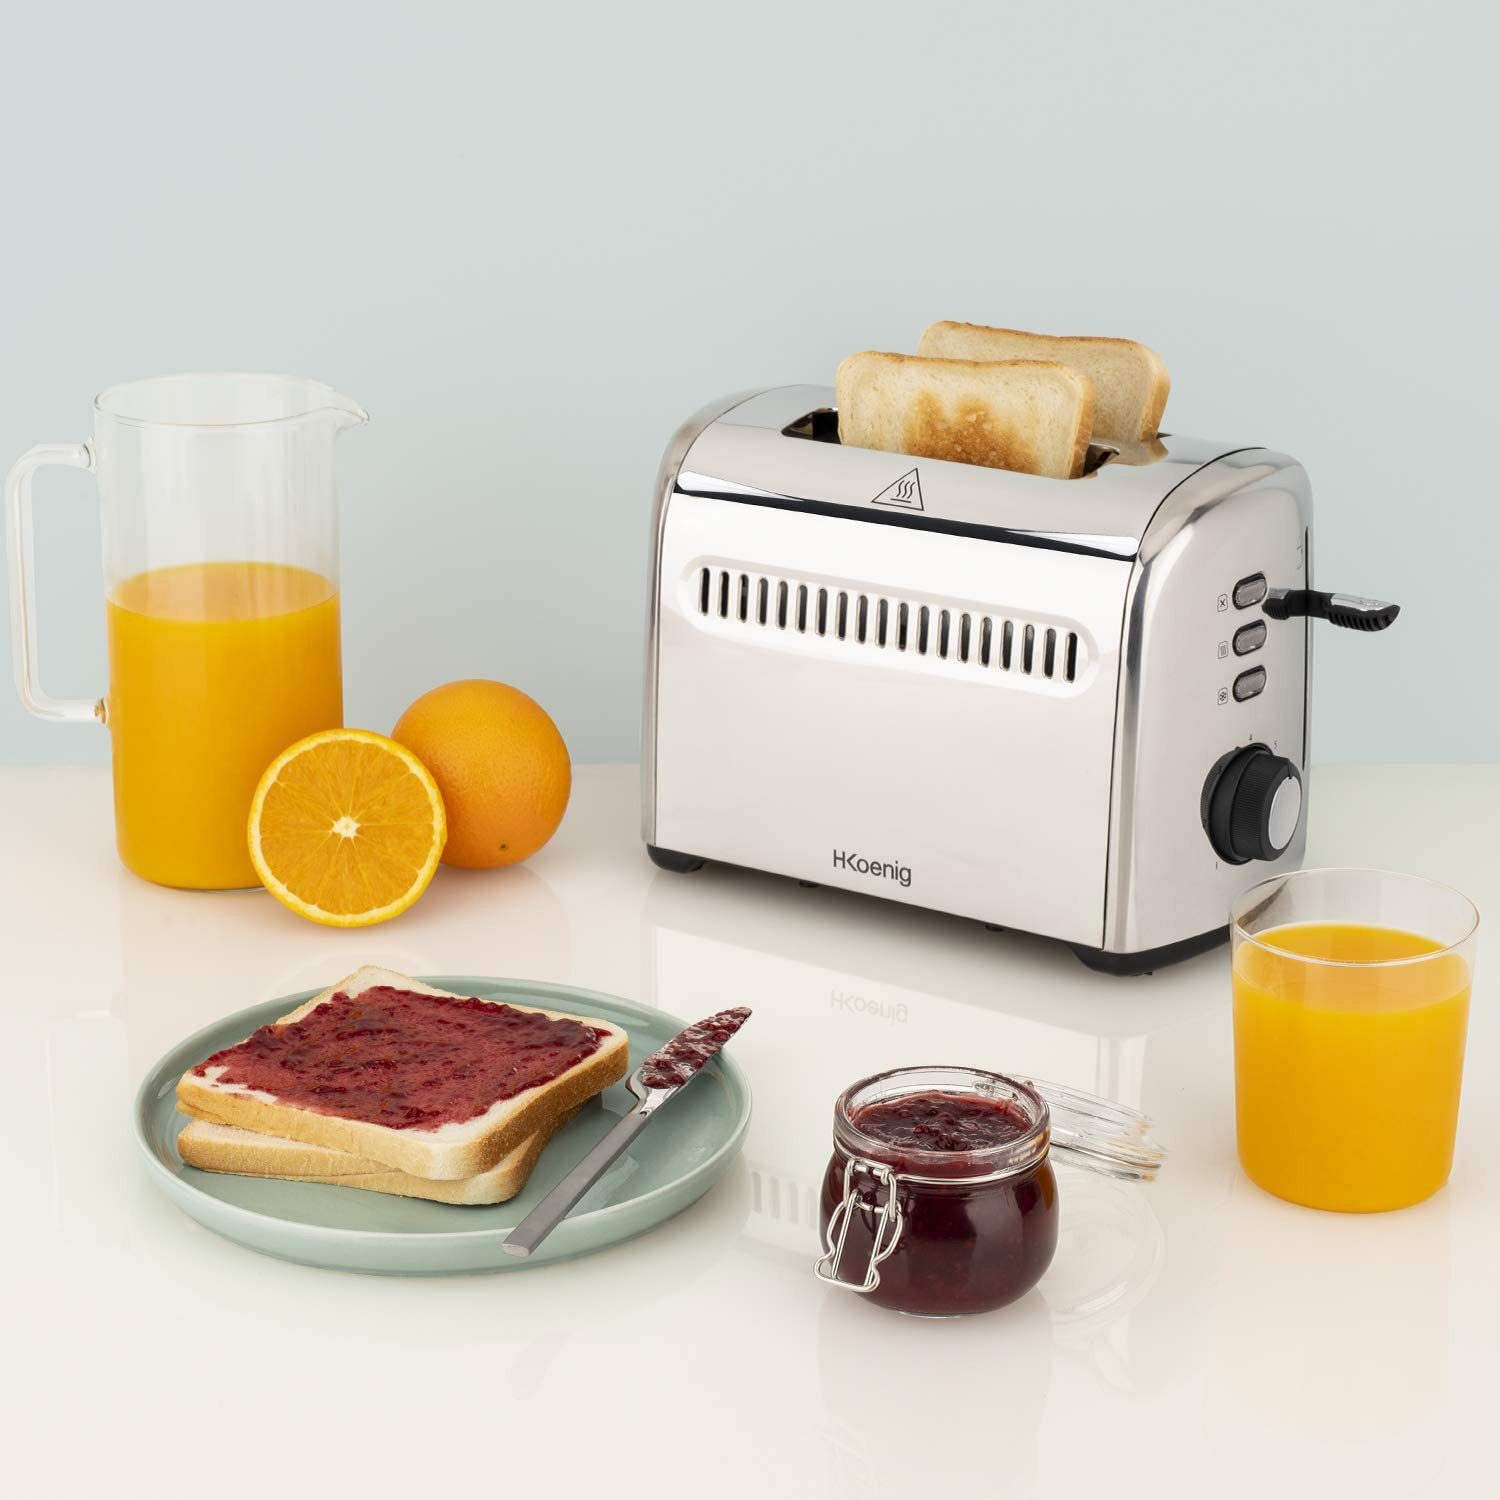 H.Koenig Toaster TOS9 Scheiben Toast, 2 W 950 für